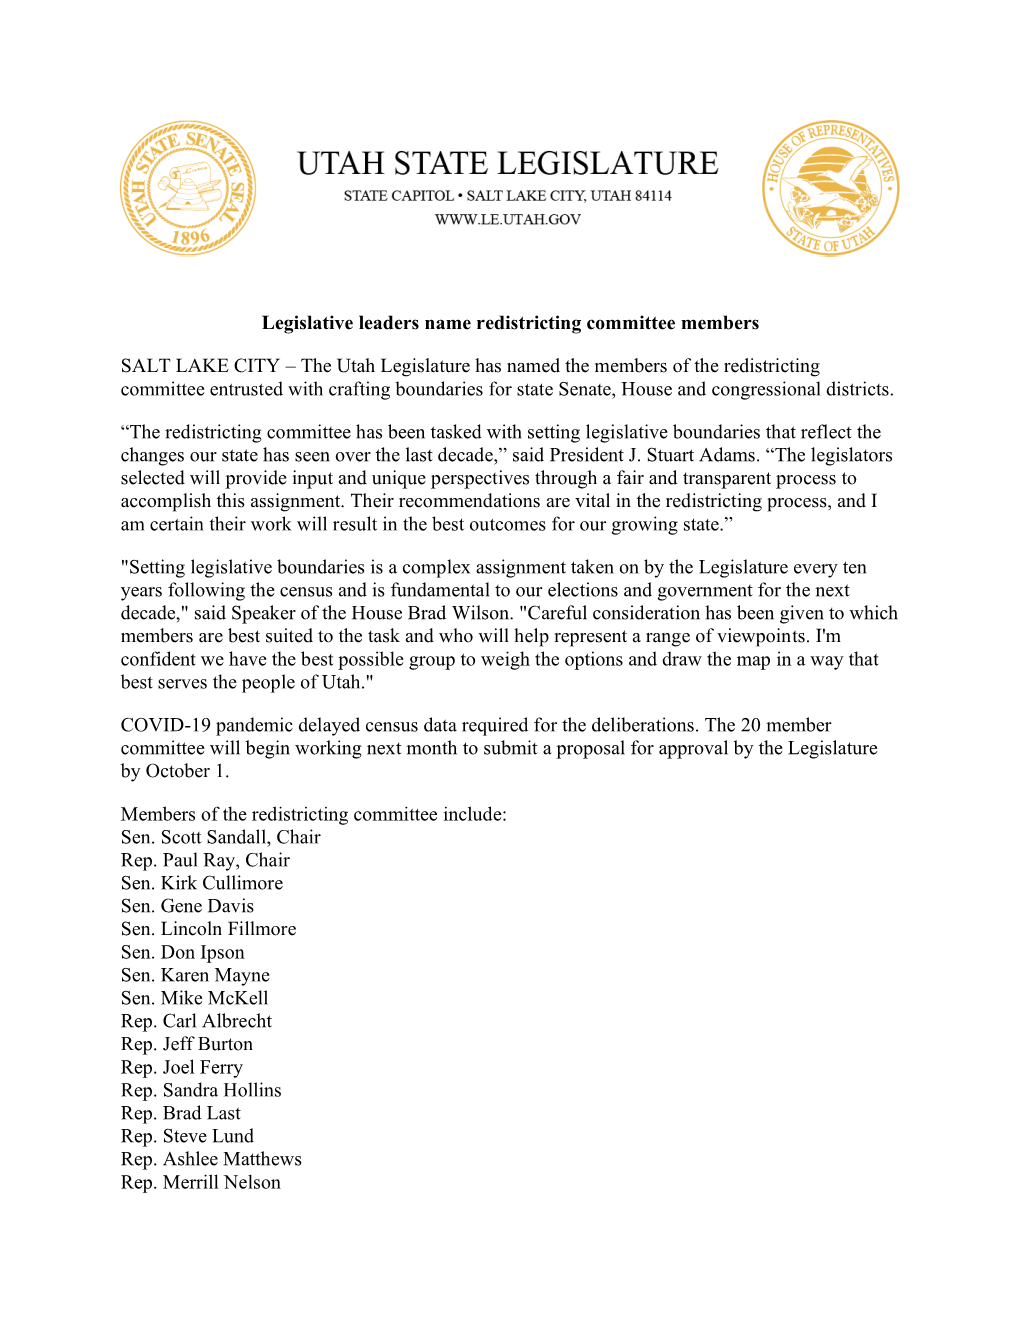 Legislative Leaders Name Redistricting Committee Members